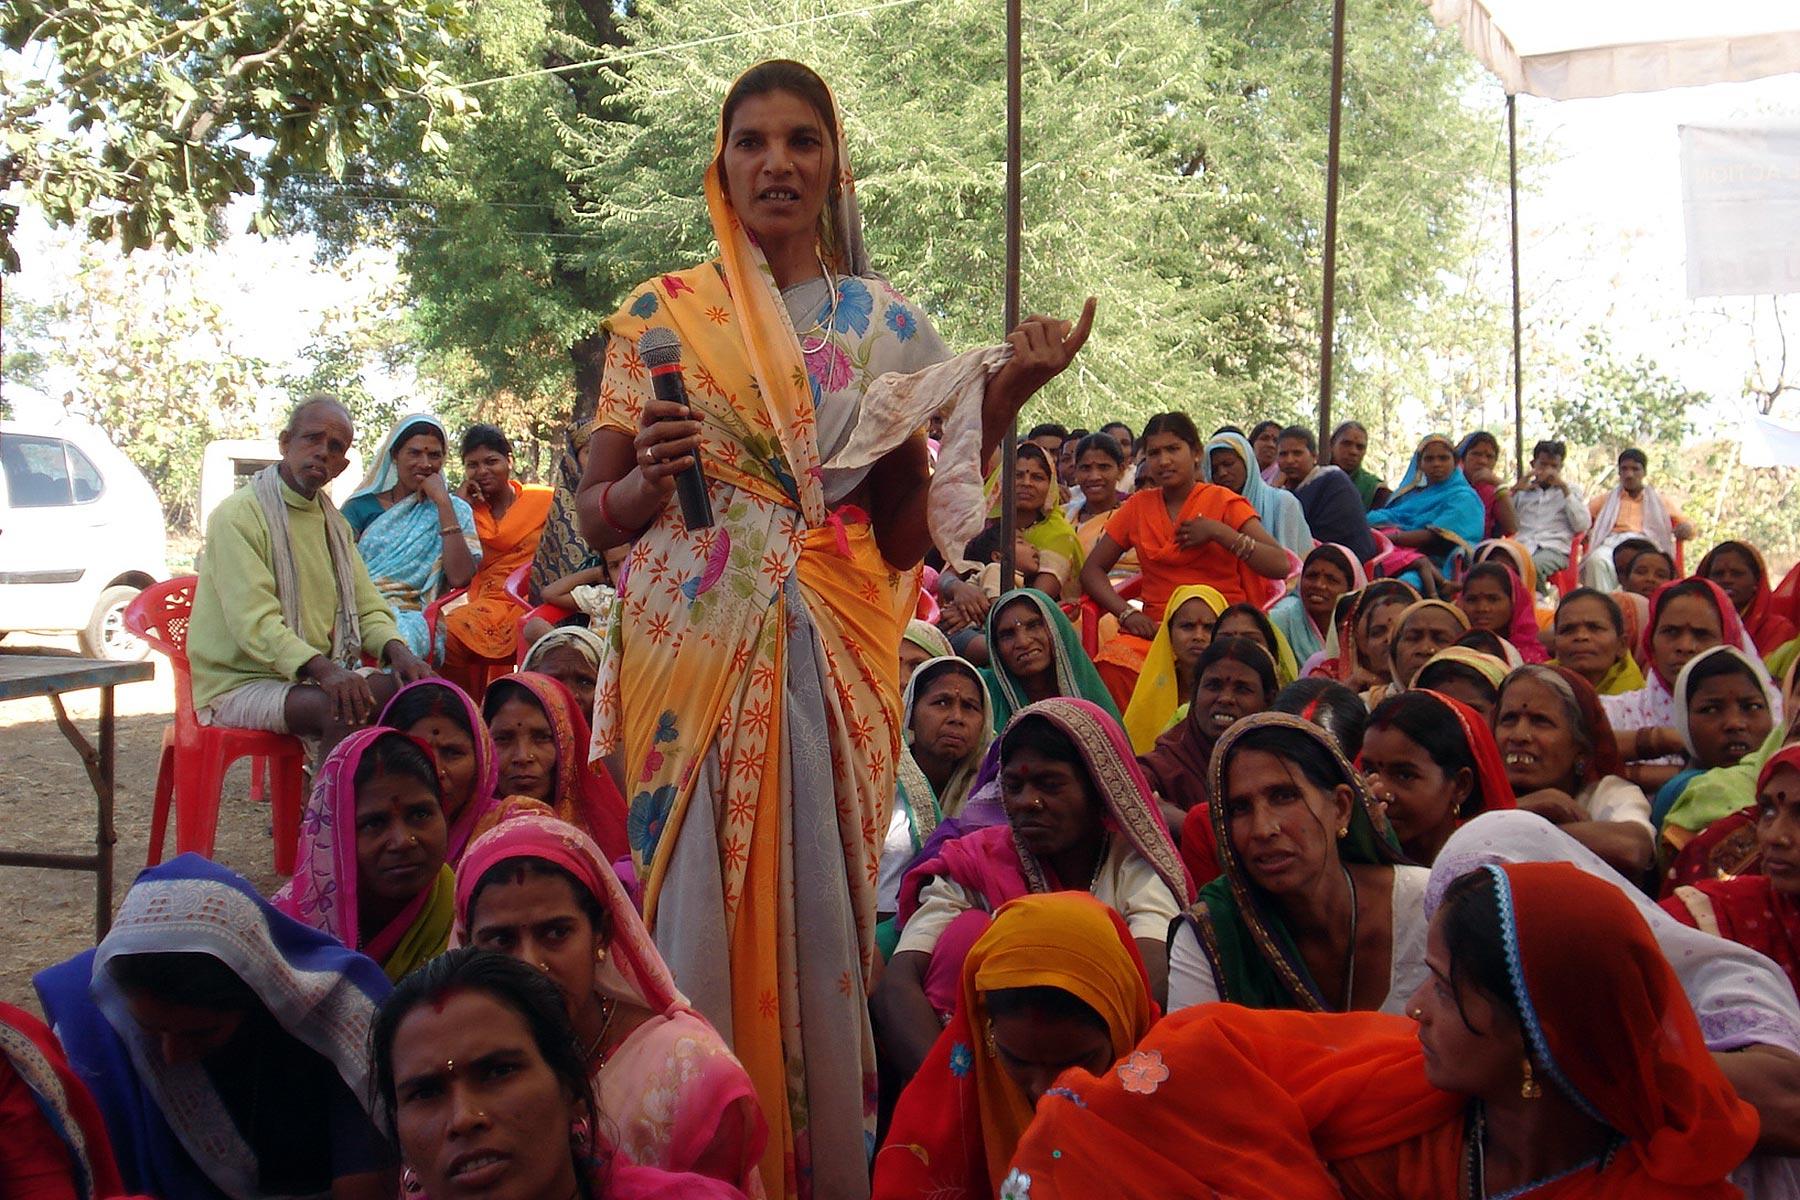 A member of a womenâs group with the Abhilasha Federation, shares her views during an empowerment training seminar focusing on the role of women in community development, leadership and economic empowerment, in Shahpur, Betul, Madhya Pradesh, India. Photo: ELC WESA PROJECT